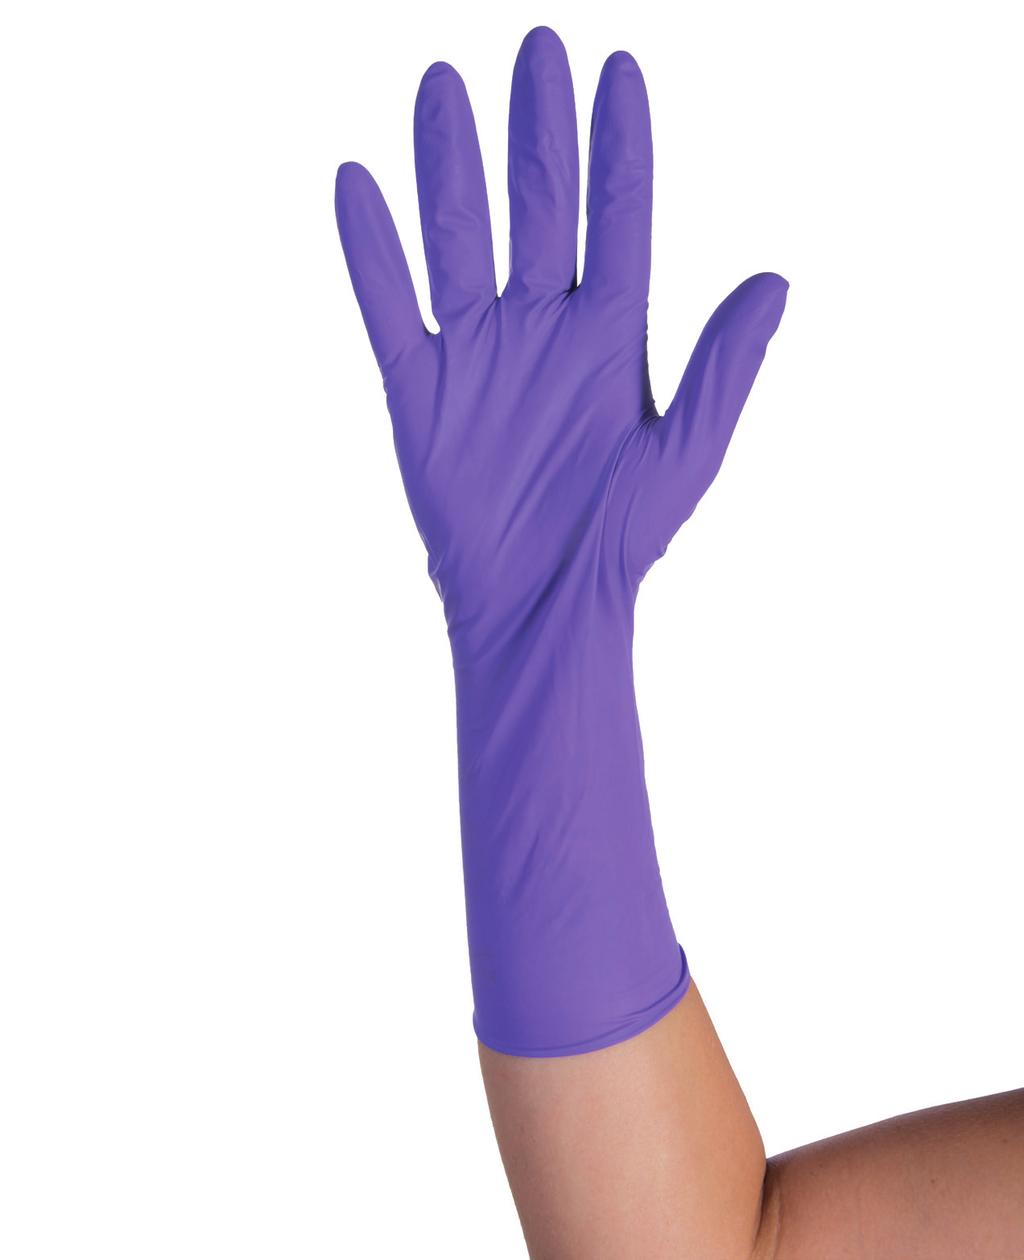 Purple Xtra Bezprašné vyšetřovací rukavice prodloužené Pro extrémně vysoké riziko infekce Využití práce s cytostatiky pohotovost, záchranná služba ARO, JIP, urgentní příjem patologie, sterilizace AQL